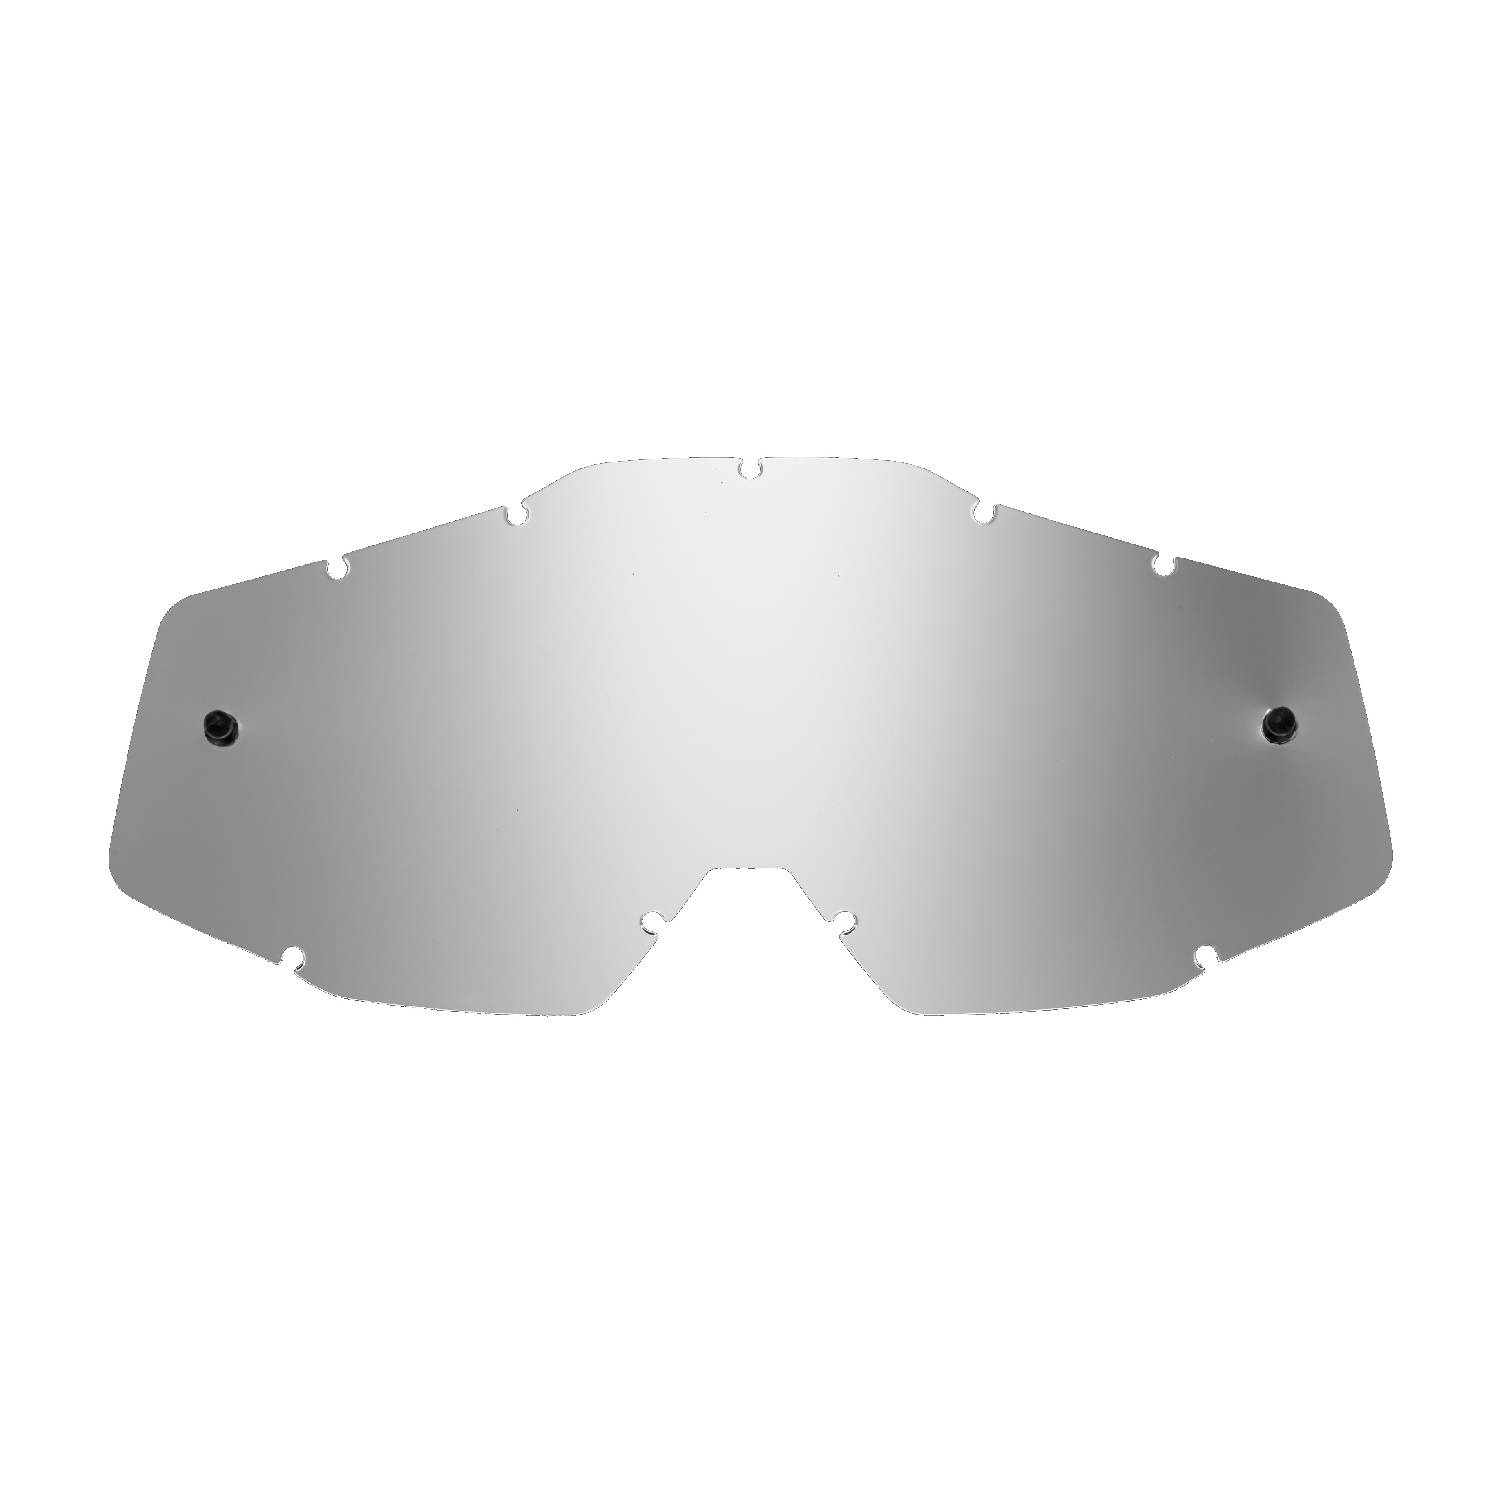 SeeCle.it SE-41S207-HZ Lente di ricambio argento specchiato compatibile per occhiale/maschera 100% RC-ST-AC-ME NON COMPATIBILE GENERAZIONE 2